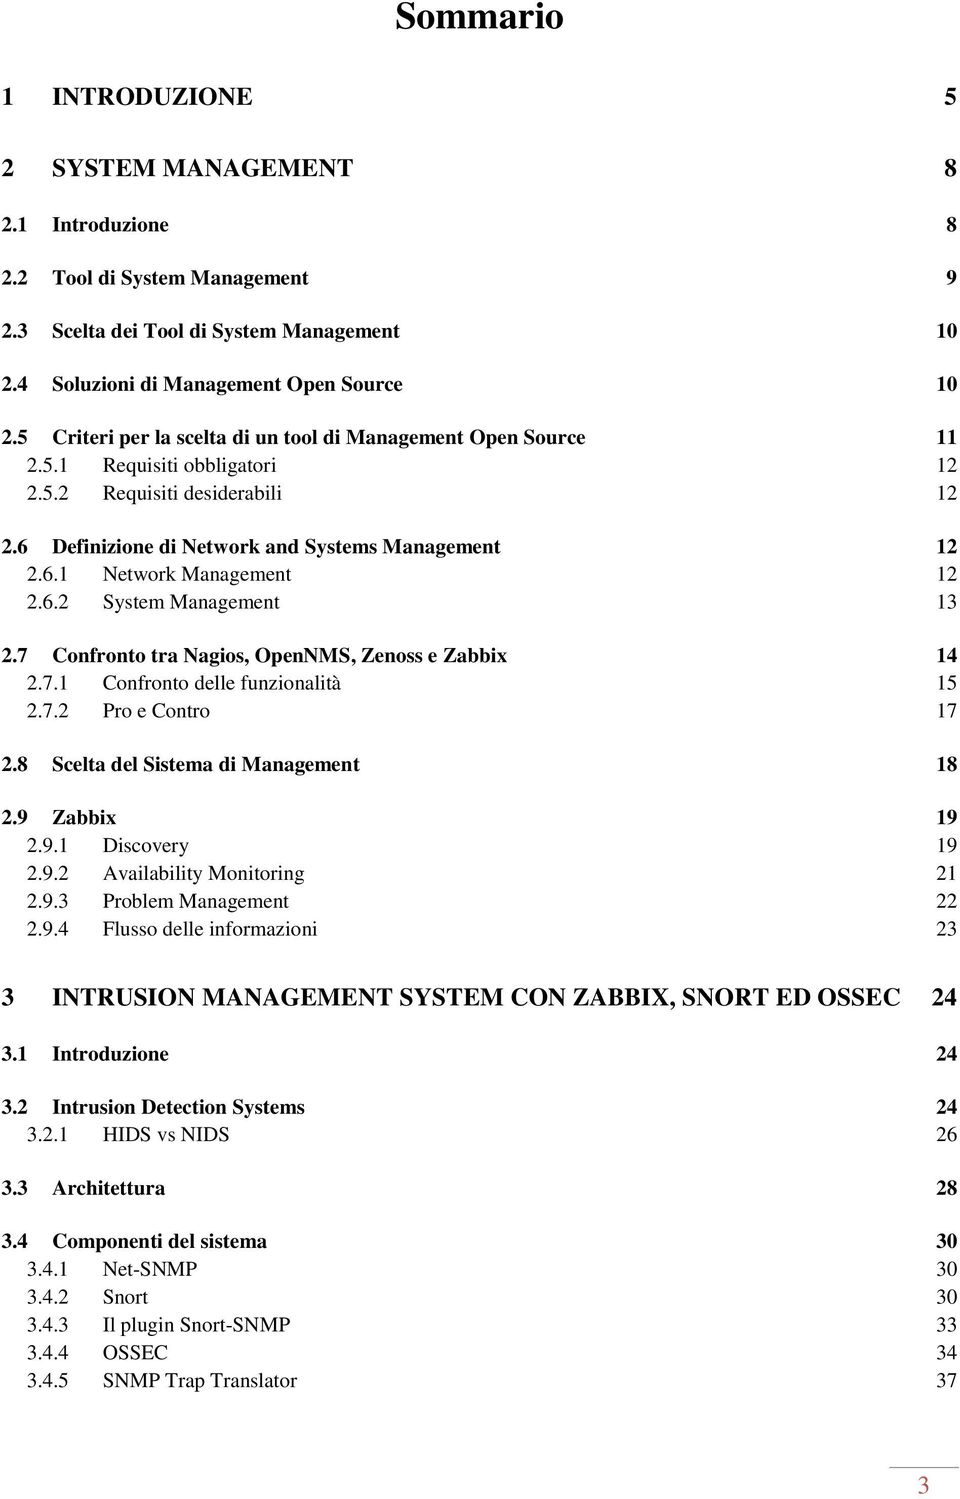 6.2 System Management 13 2.7 Confronto tra Nagios, OpenNMS, Zenoss e Zabbix 14 2.7.1 Confronto delle funzionalità 15 2.7.2 Pro e Contro 17 2.8 Scelta del Sistema di Management 18 2.9 Zabbix 19 2.9.1 Discovery 19 2.